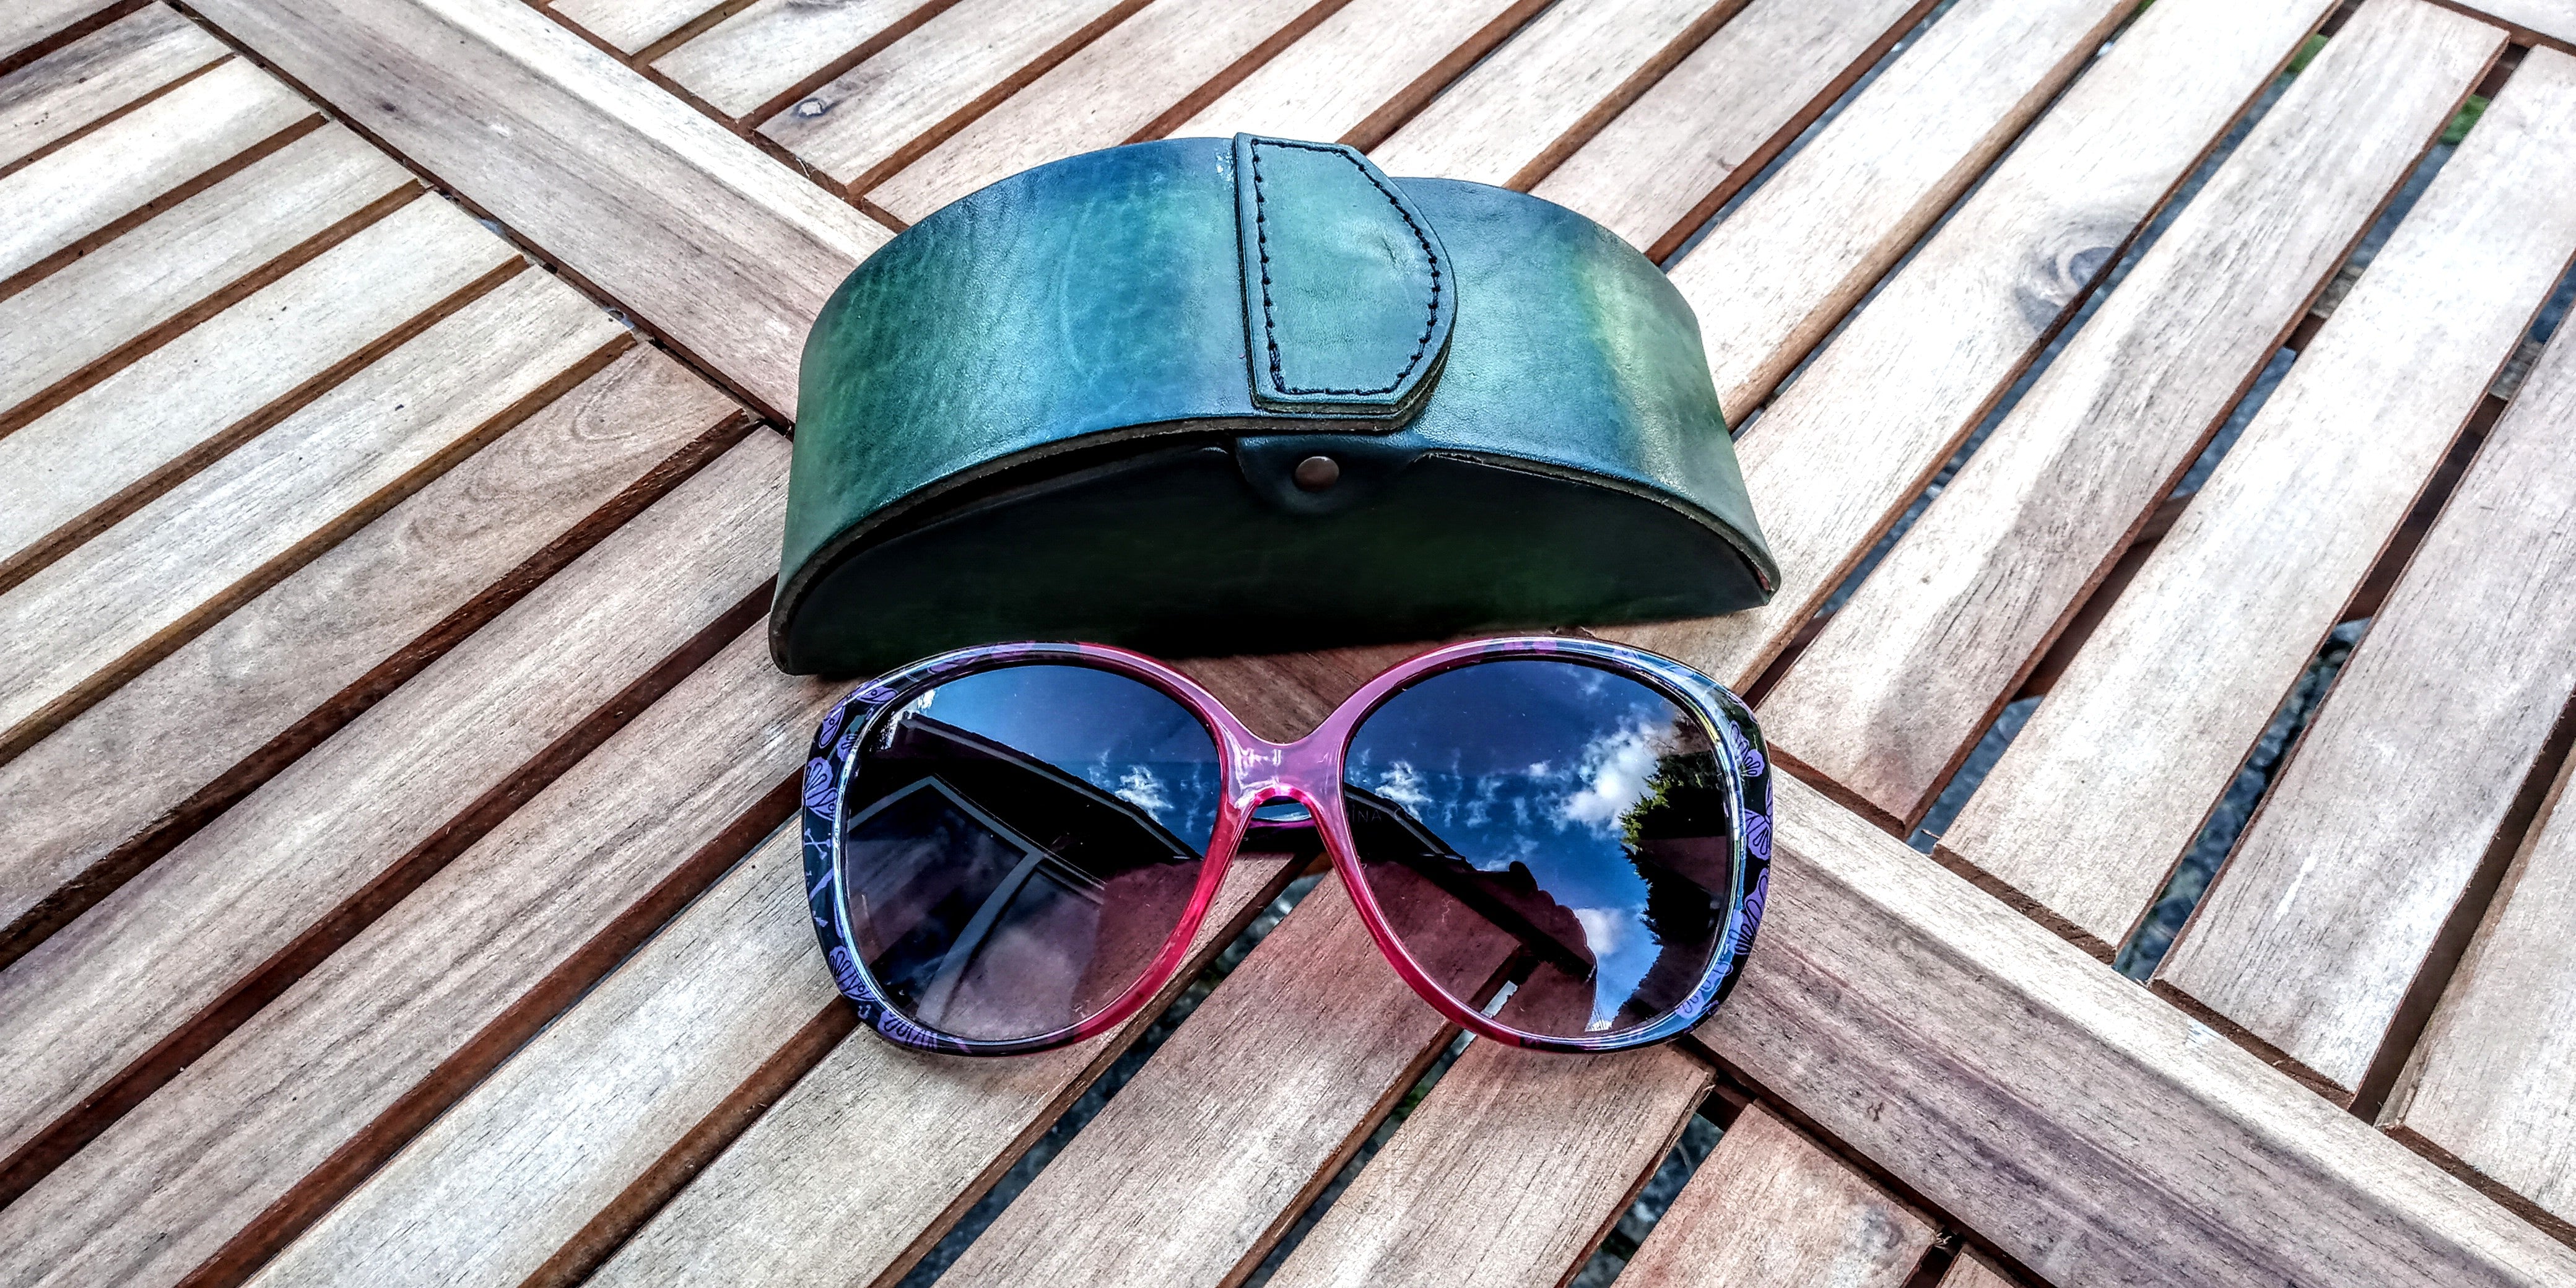 Sunglasses case